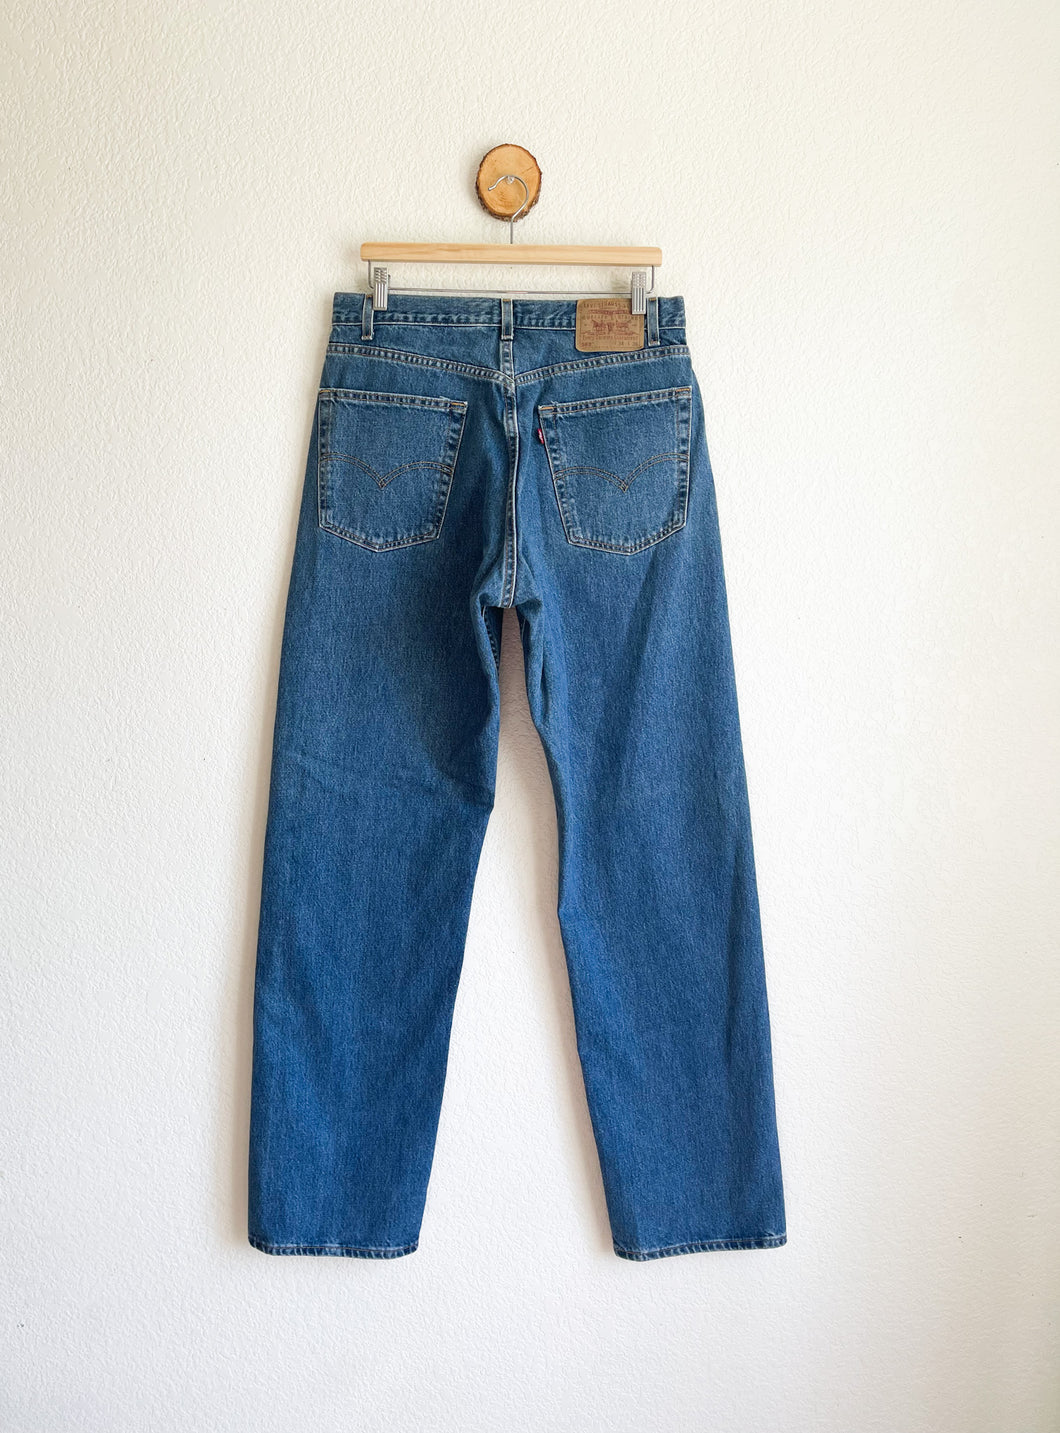 Vintage Levi's 569 Jeans - 34